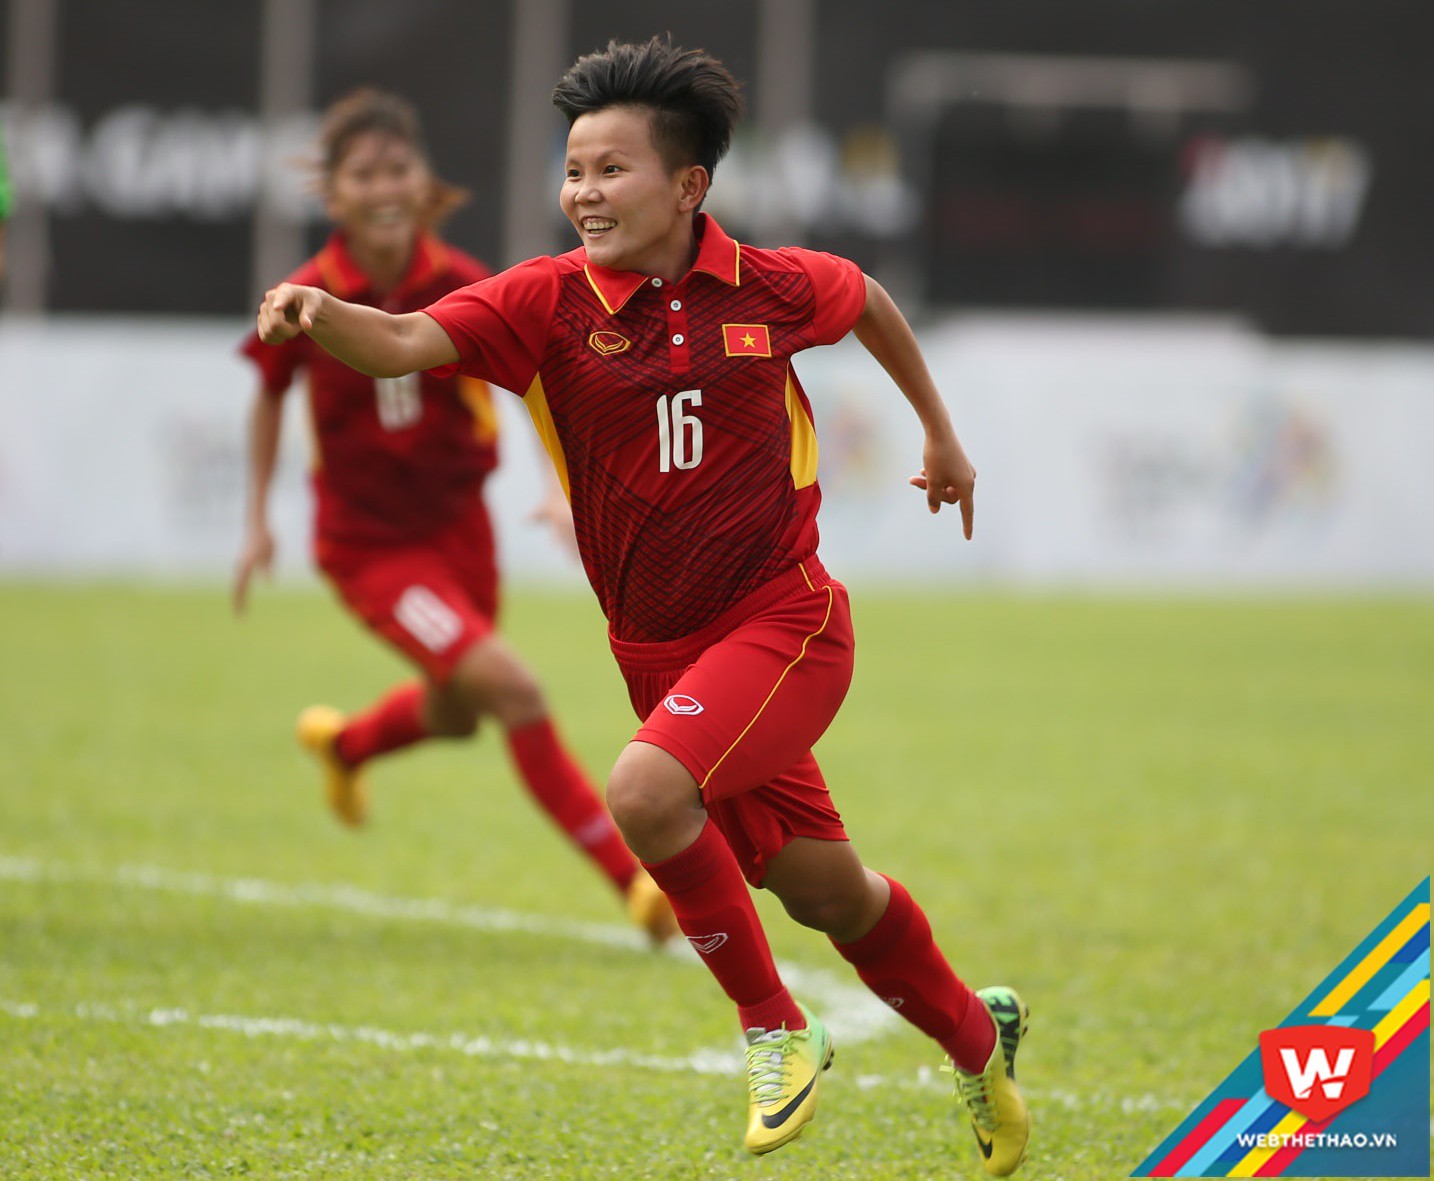 Bích Thùy ghi bàn thắng tuyệt đẹp cho tuyển nữ Việt Nam. Ảnh:D.A